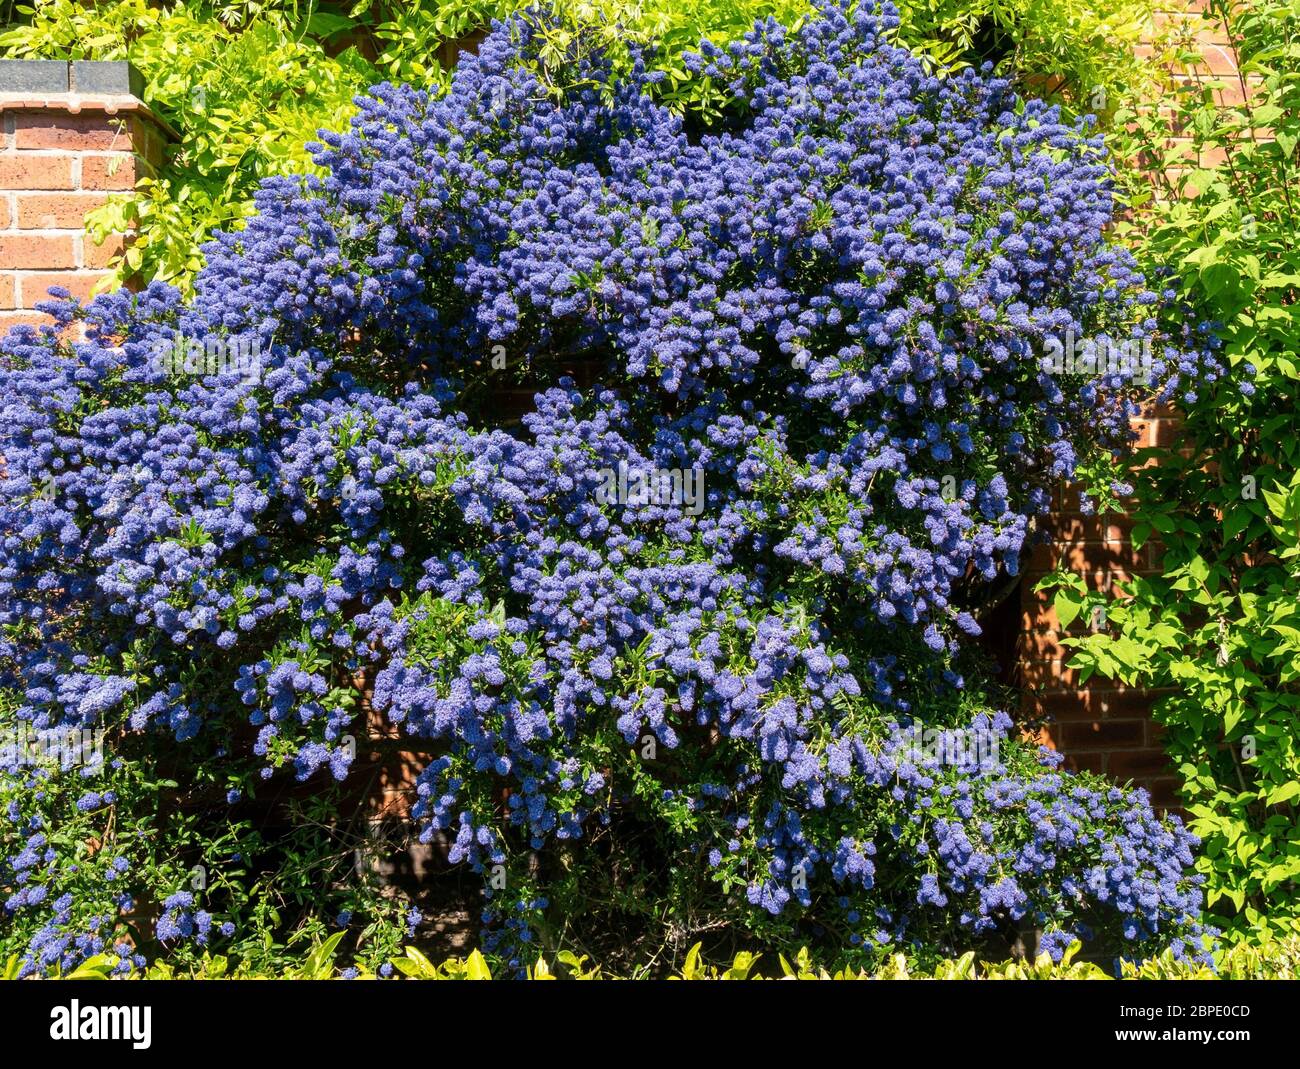 Ceanothus 'Puget Blue' arbusto de lila californiana cubierto de flores de flor azul profunda en mayo, Leicestershire, Inglaterra, Reino Unido Foto de stock